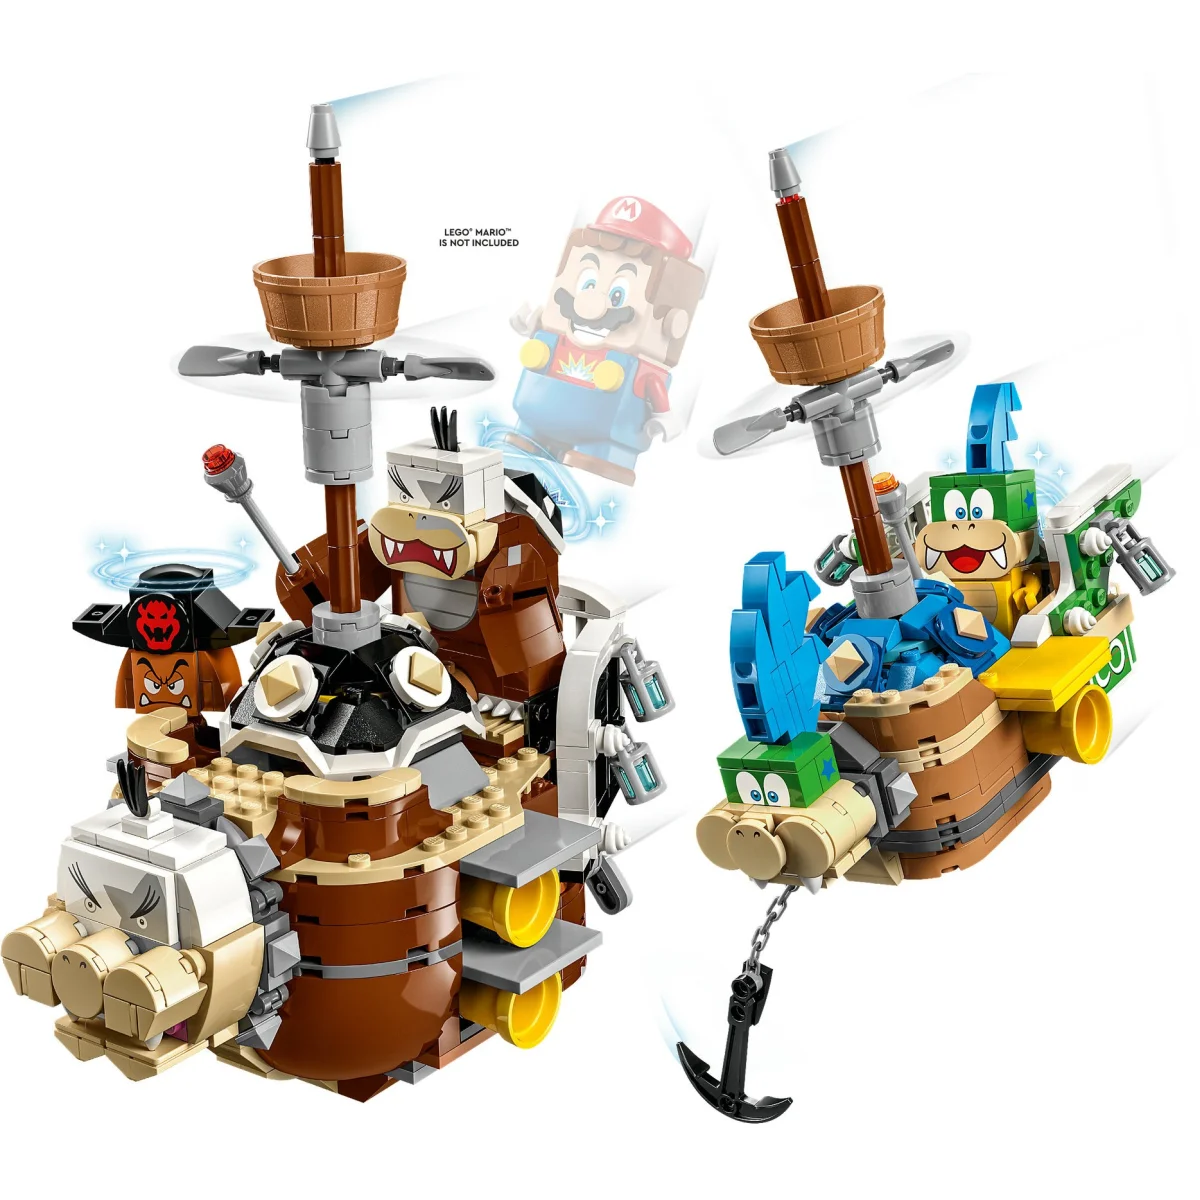 LEGO® Super Mario Larry und Mortons Luftgaleeren - Erweiterungsset 71427